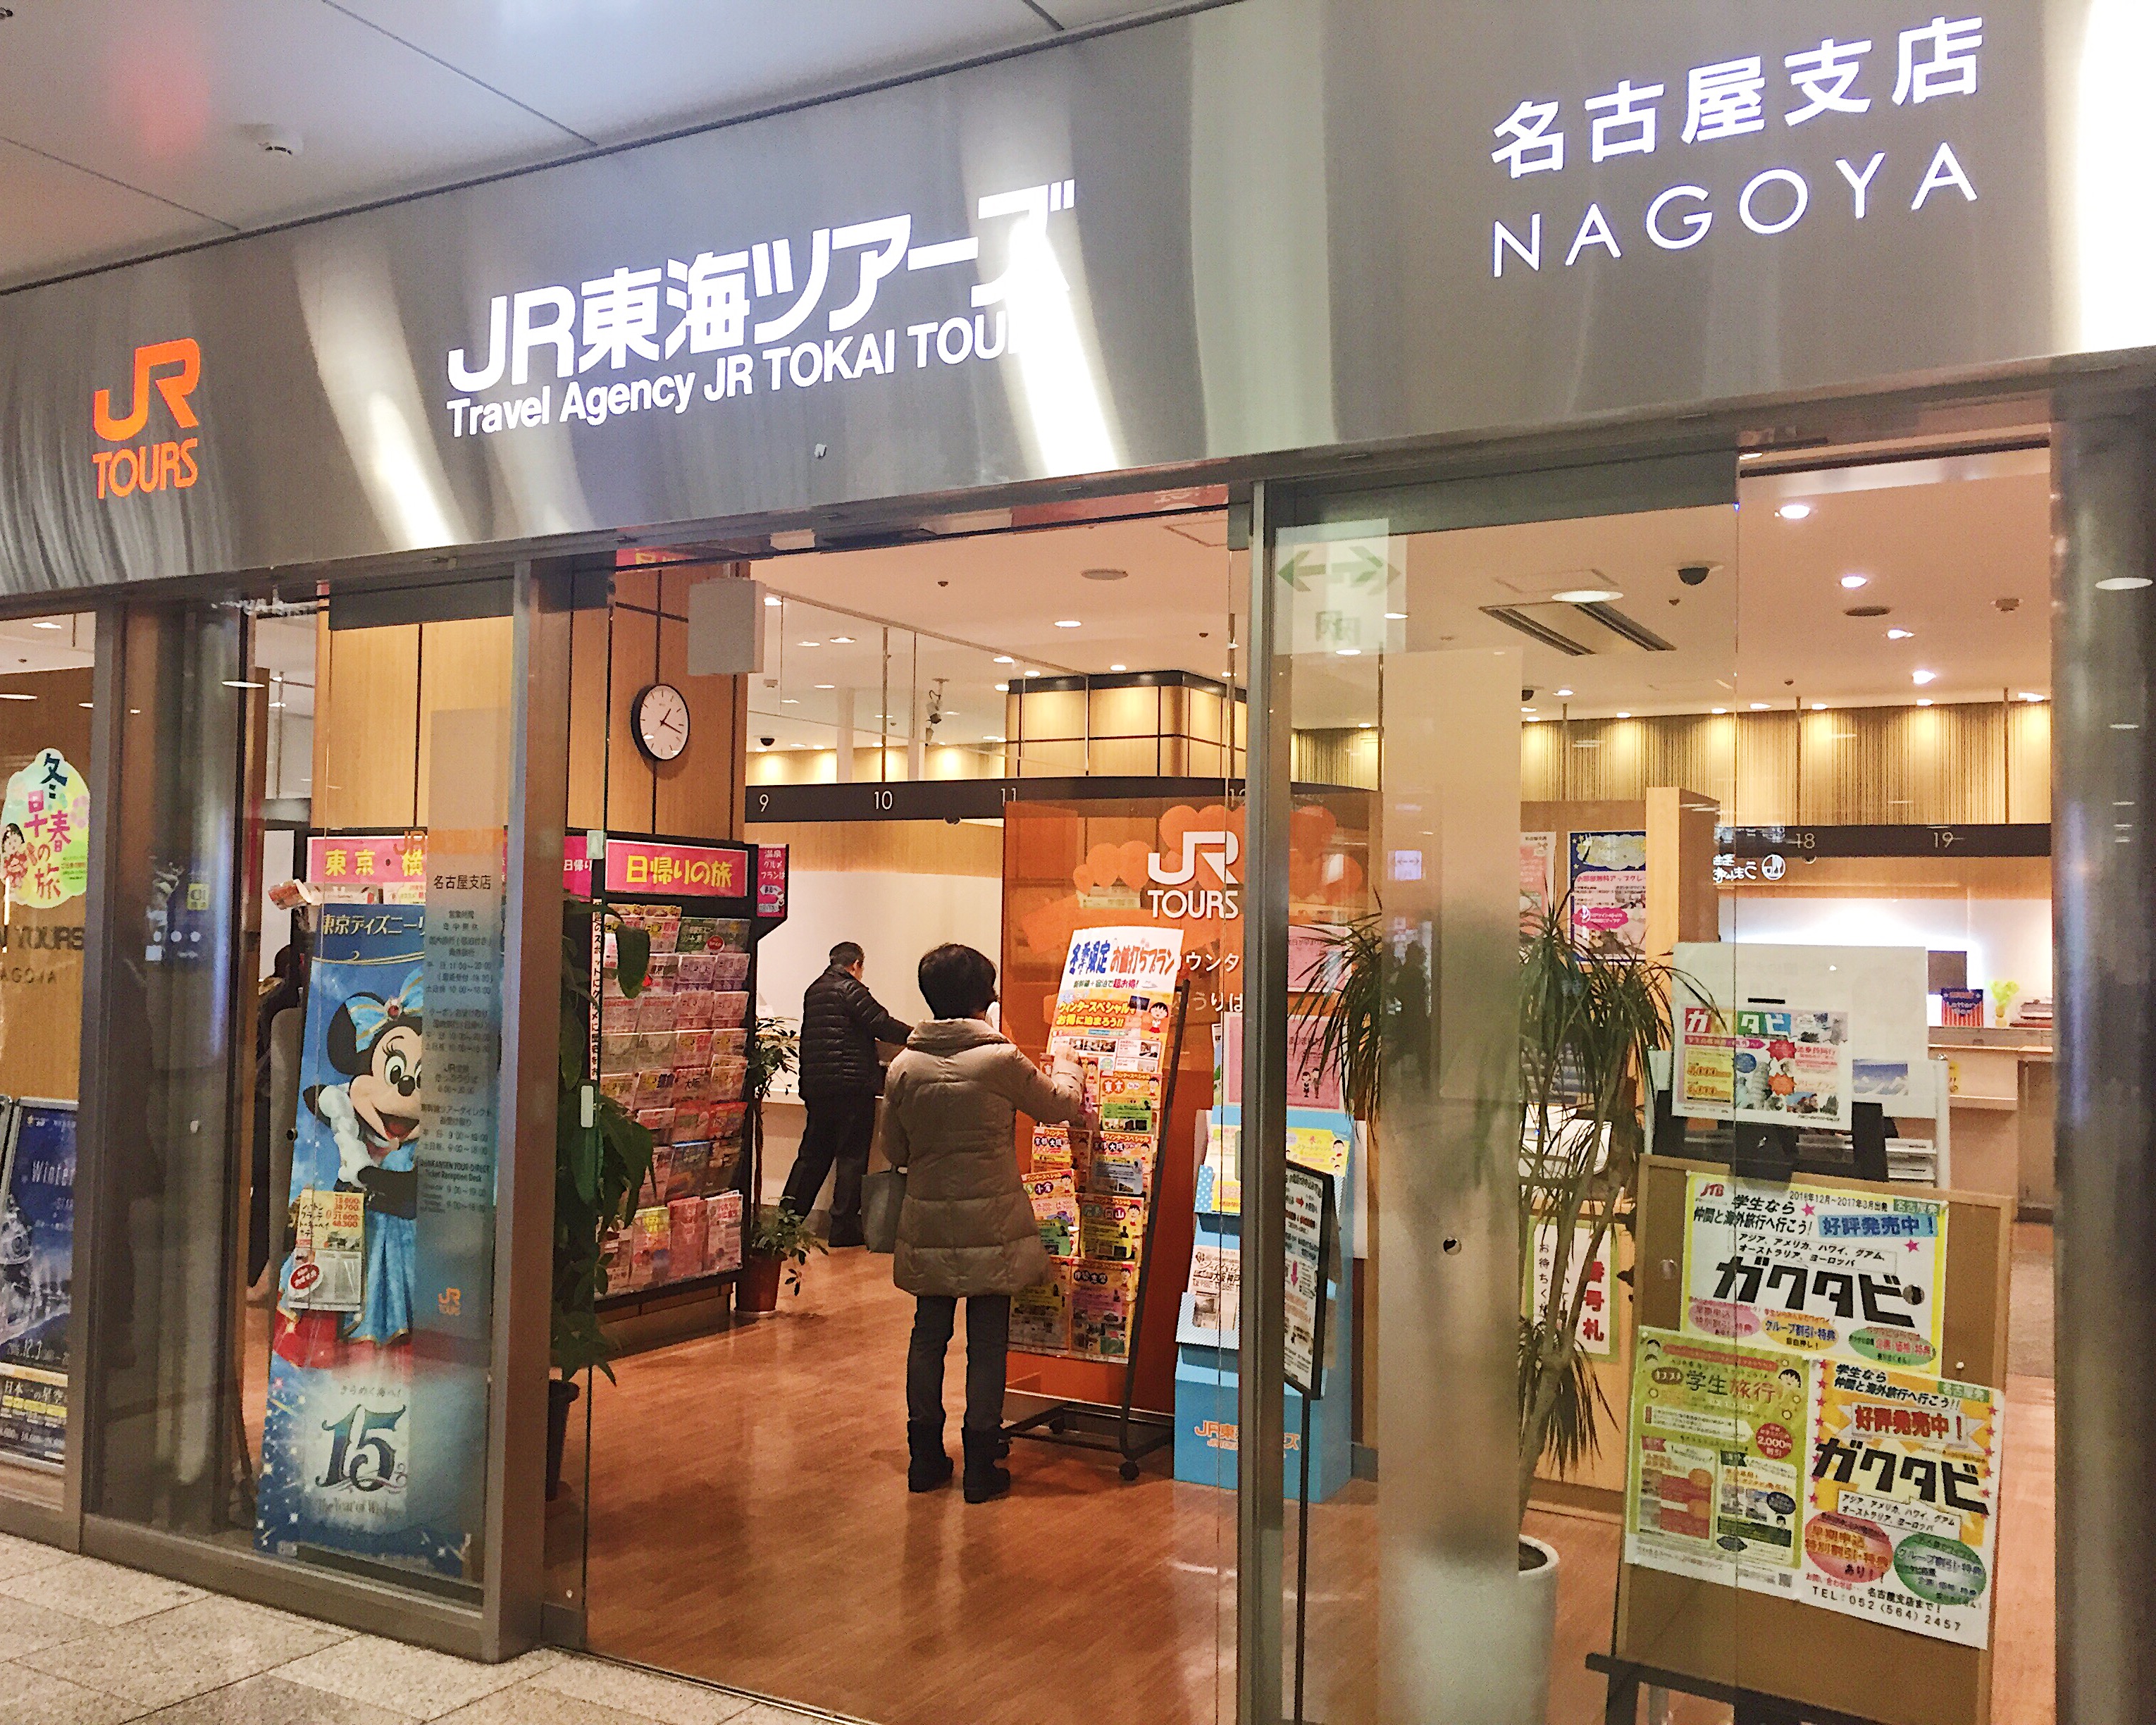 JR Tour Office Nagoya Station